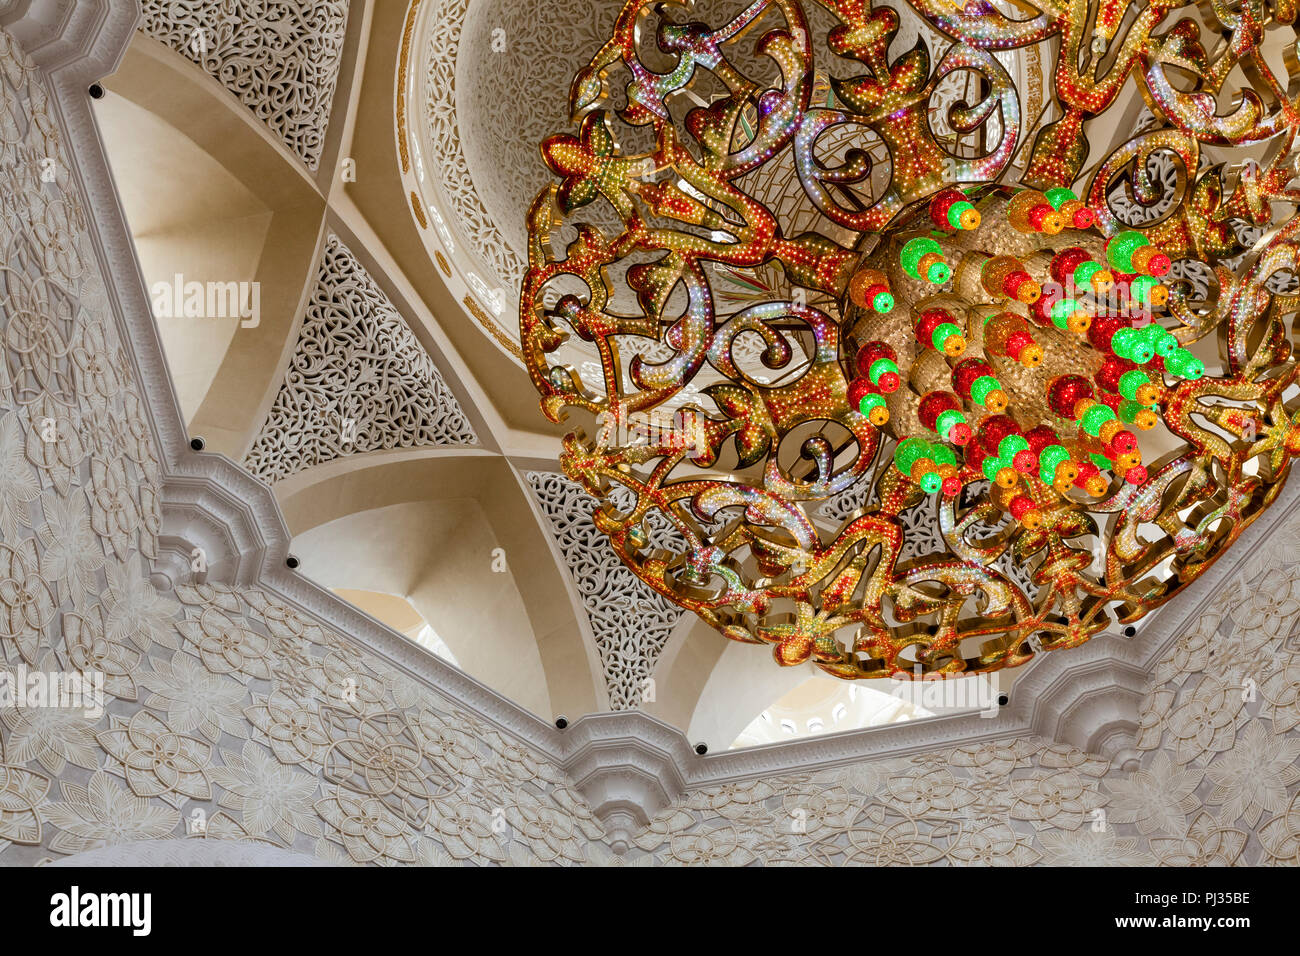 A Swarovski chandelier in the Sheikh Zayed Grand Mosque in Abu Dhabi, UAE  Stock Photo - Alamy